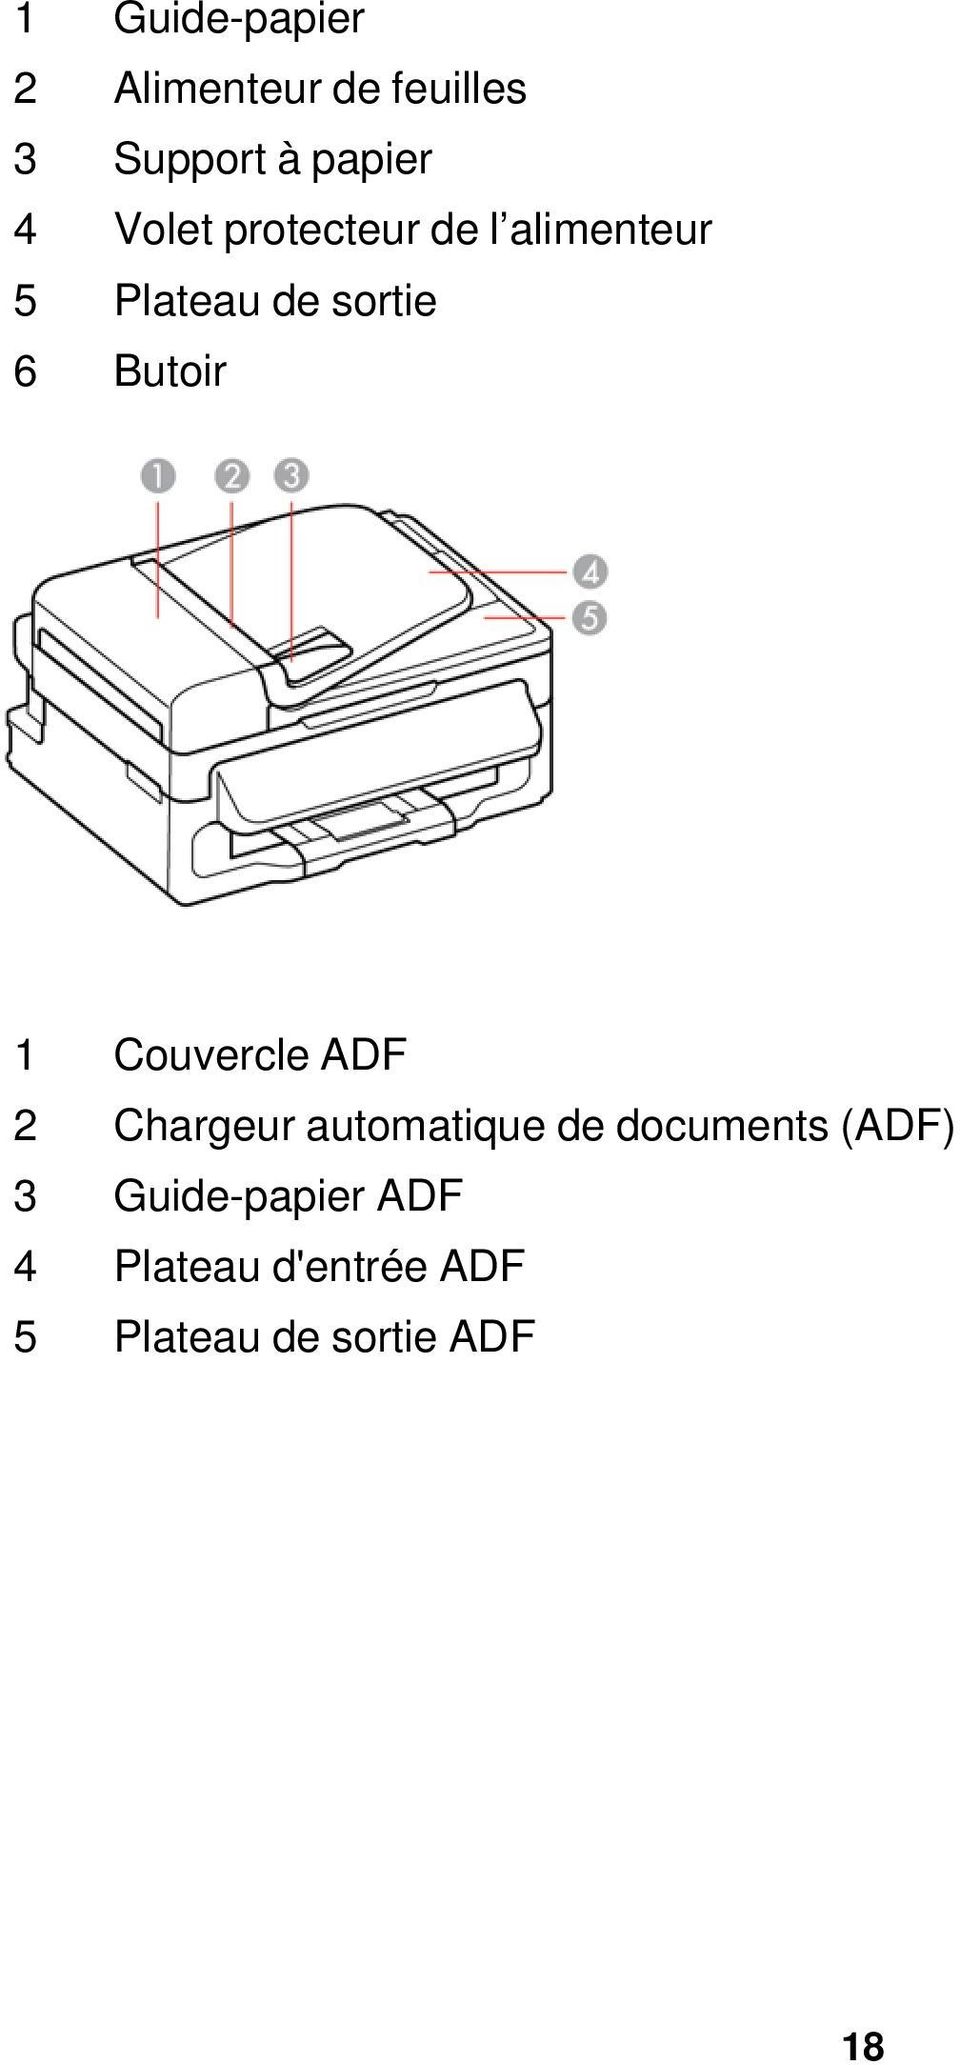 1 Couvercle ADF 2 Chargeur automatique de documents (ADF) 3